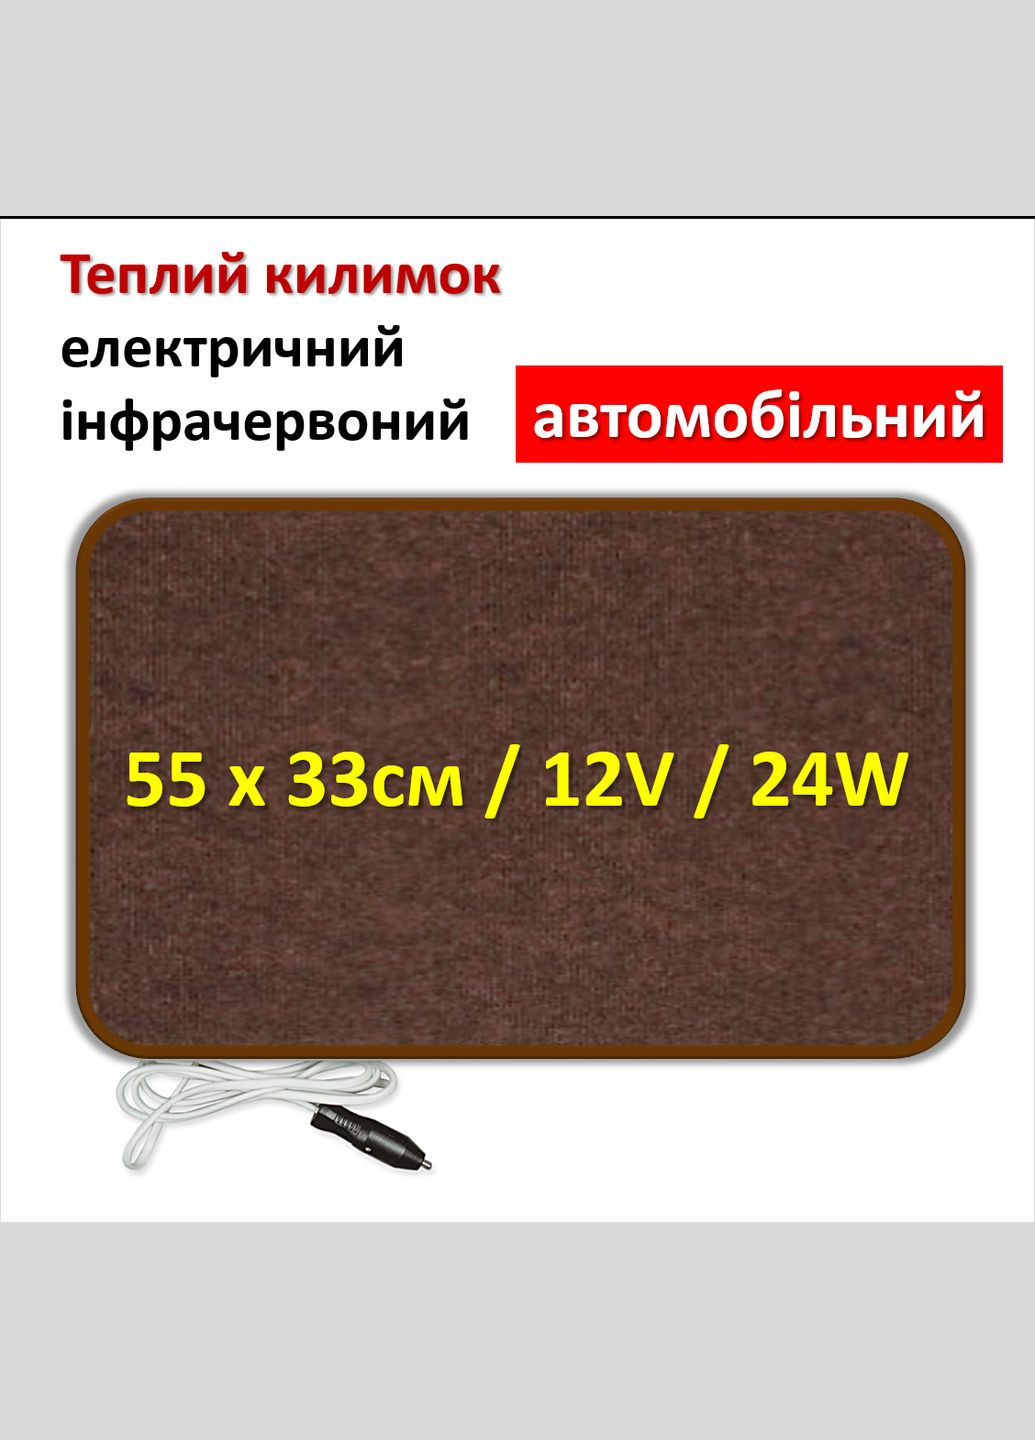 Електричний килимок з підігрівом автомобільний інфрачервоний 55х33см/12Вольт/24Вт коричневий ковролін Monocrystal (280947130)